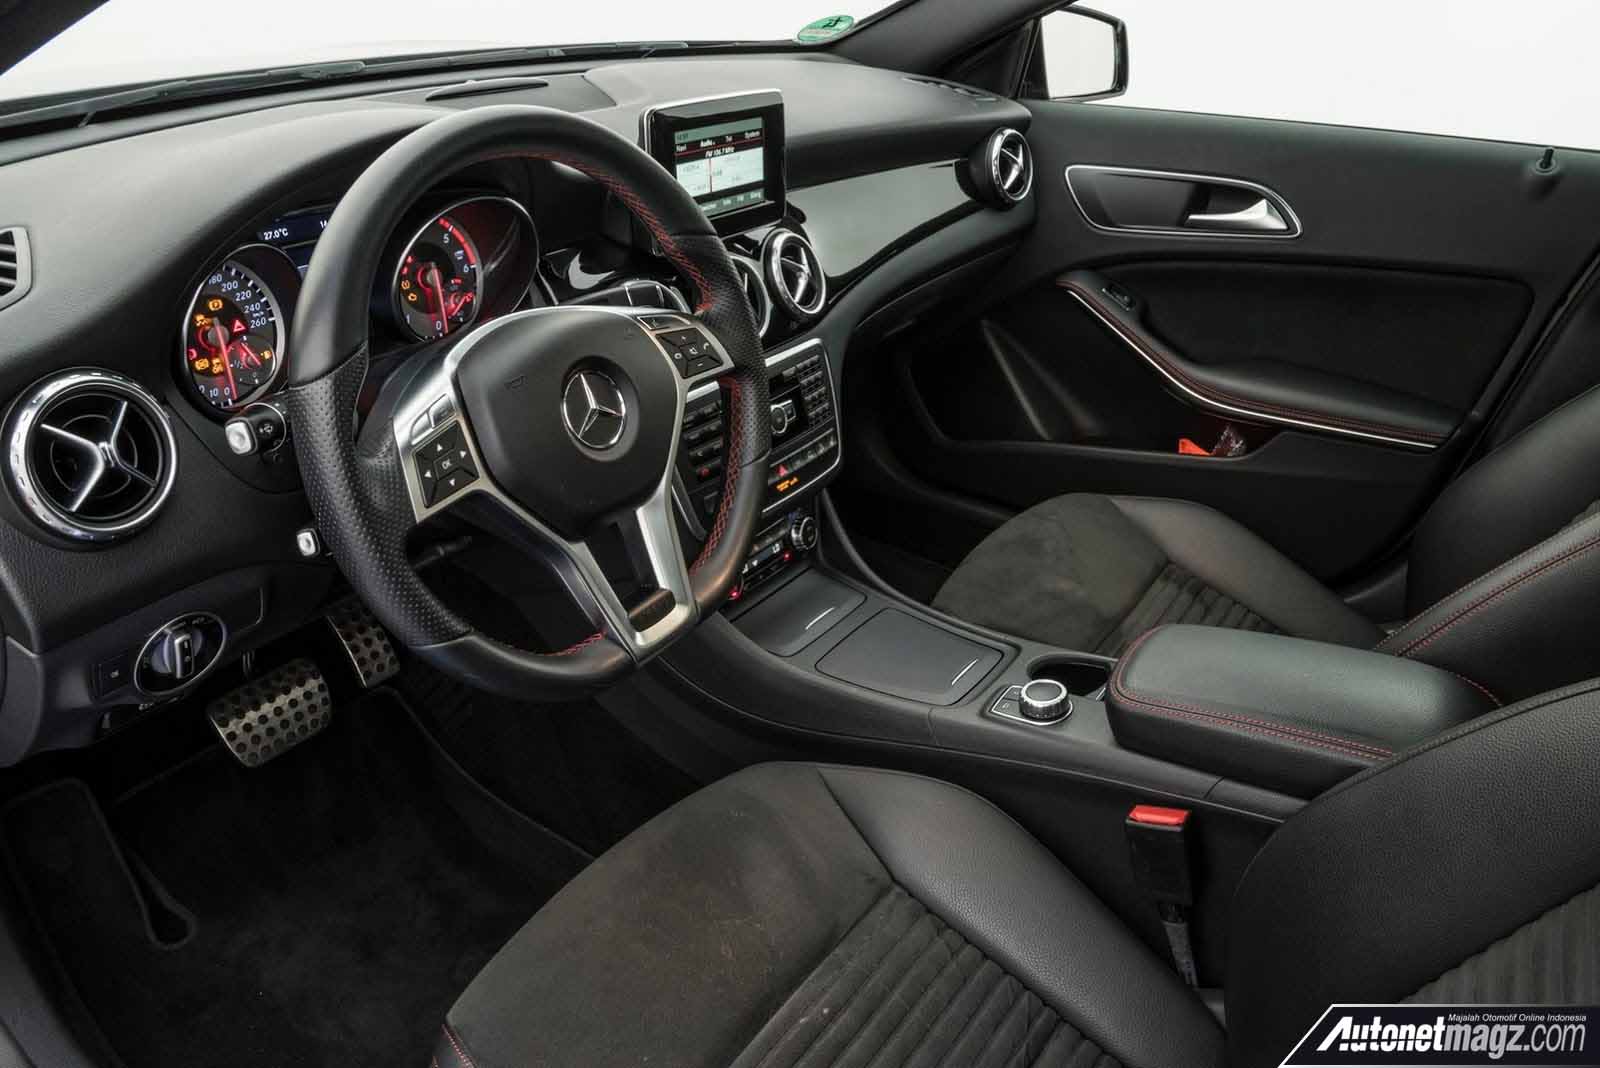 Berita, interior Brabus Mercedes Benz GLA 220 CDI: Brabus Berikan Paket Kencang Untuk GLA 220 CDI